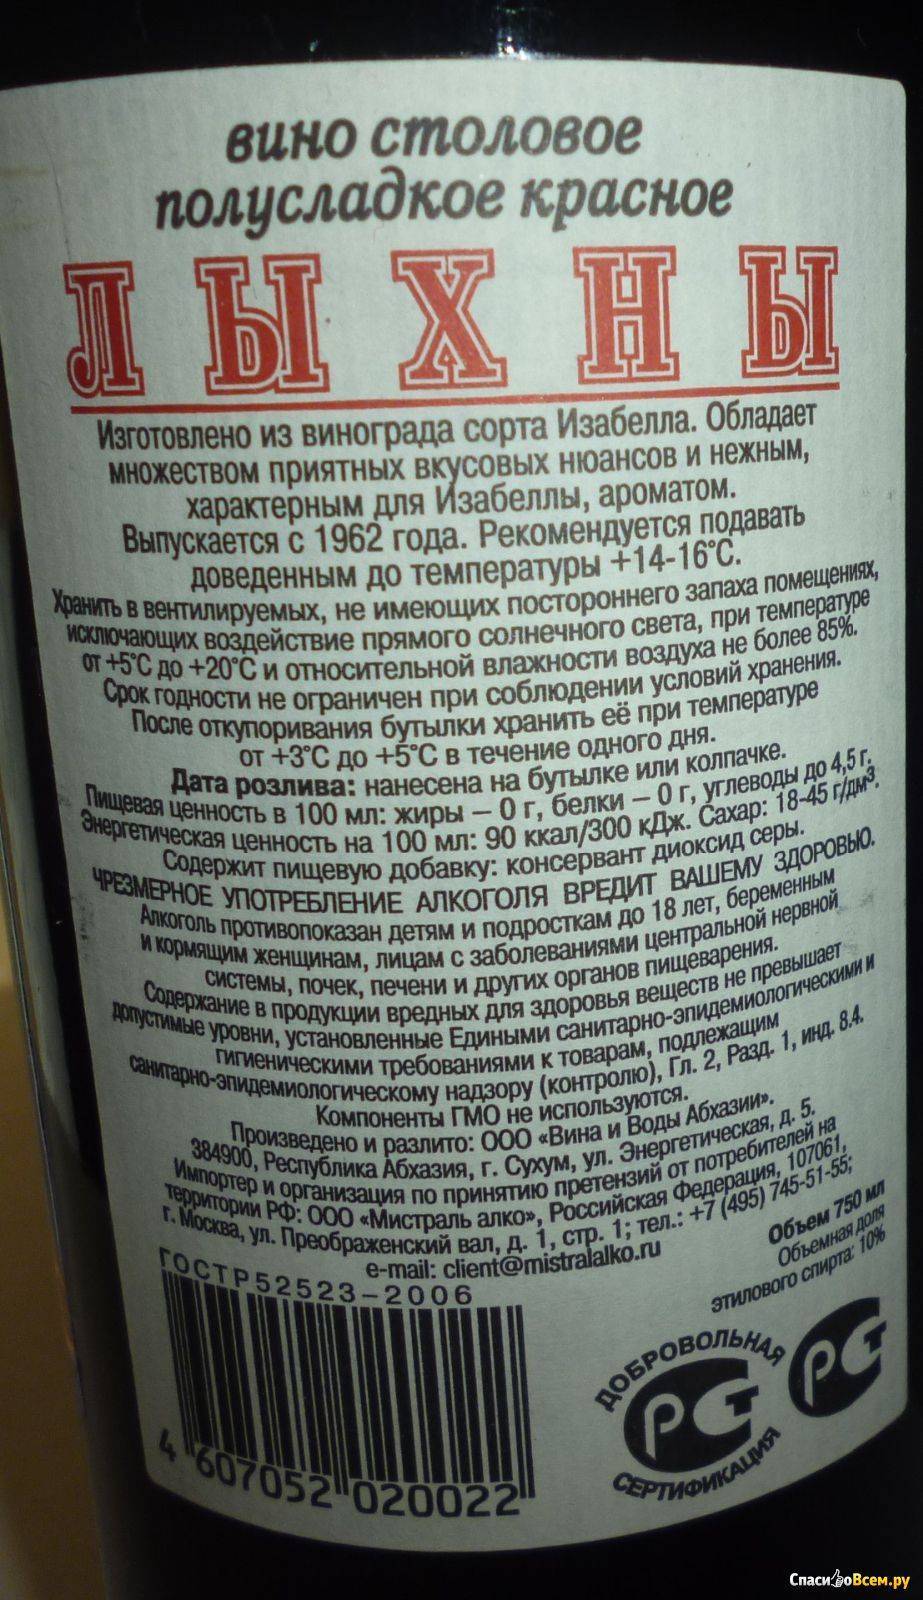 Обзор абхазского вина